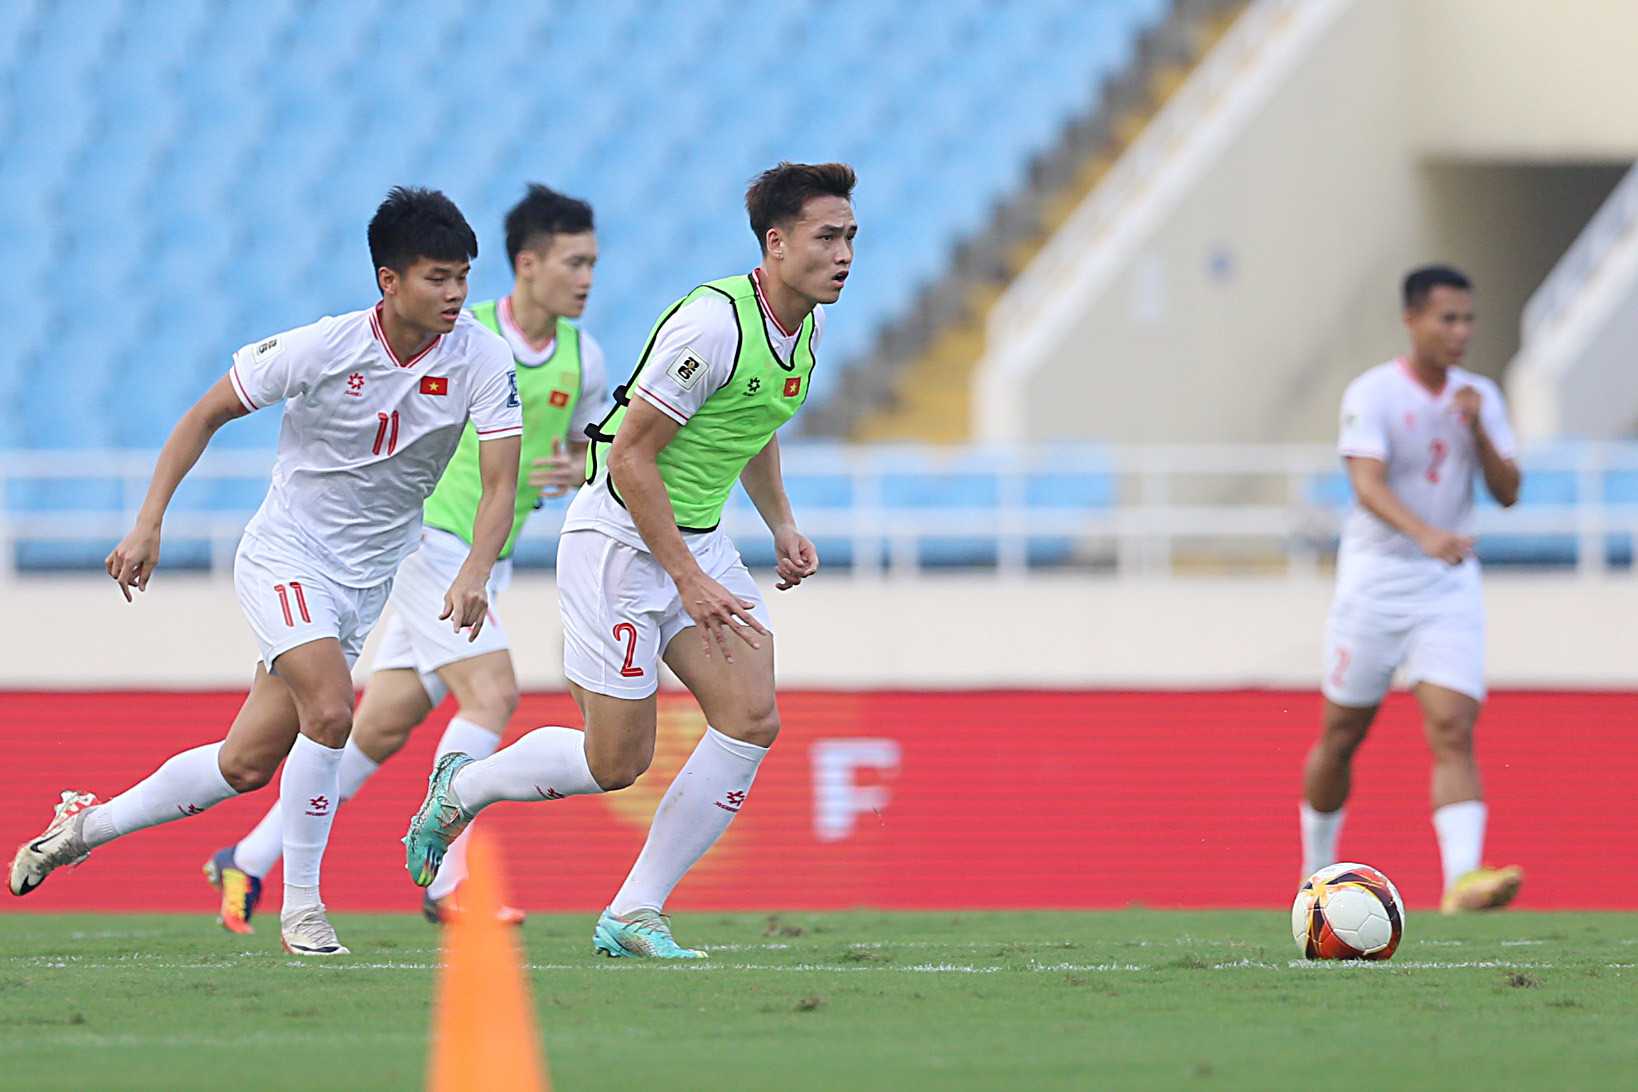 Chiều 25-3, đội tuyển Việt Nam có buổi tập chính thức làm quen sân Mỹ Đình trước trận tái đấu với Indonesia vào lúc 19h30 ngày mai 26-3 - Ảnh: HOÀNG TÙNG